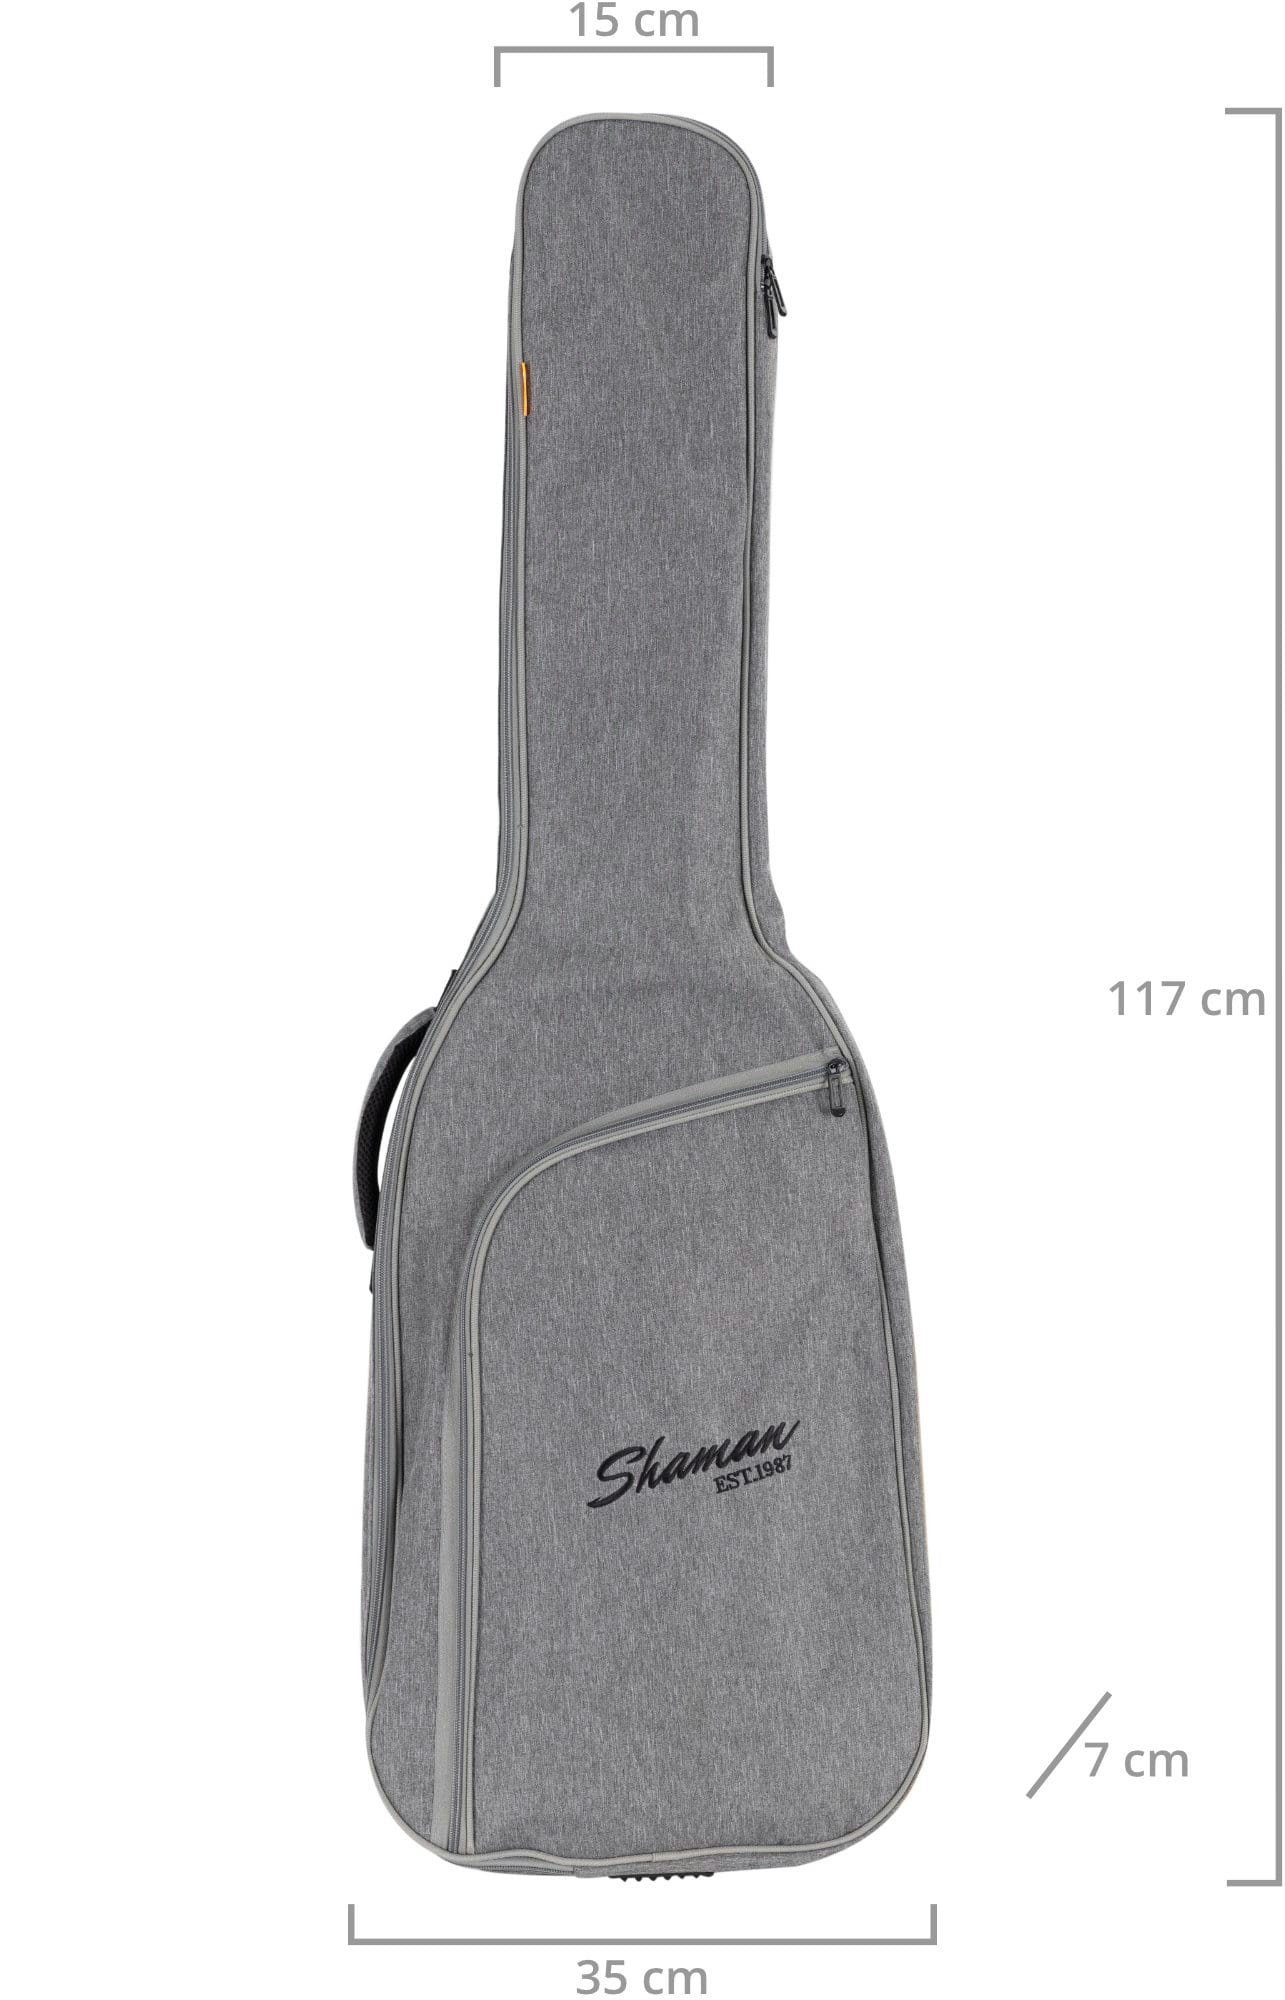 Shaman Gitarrentasche BGB-122 GY Instrumentenhals gepolsterte Rucksack-Gurte & E-Bass Tasche Fixierung Premium-Line, für